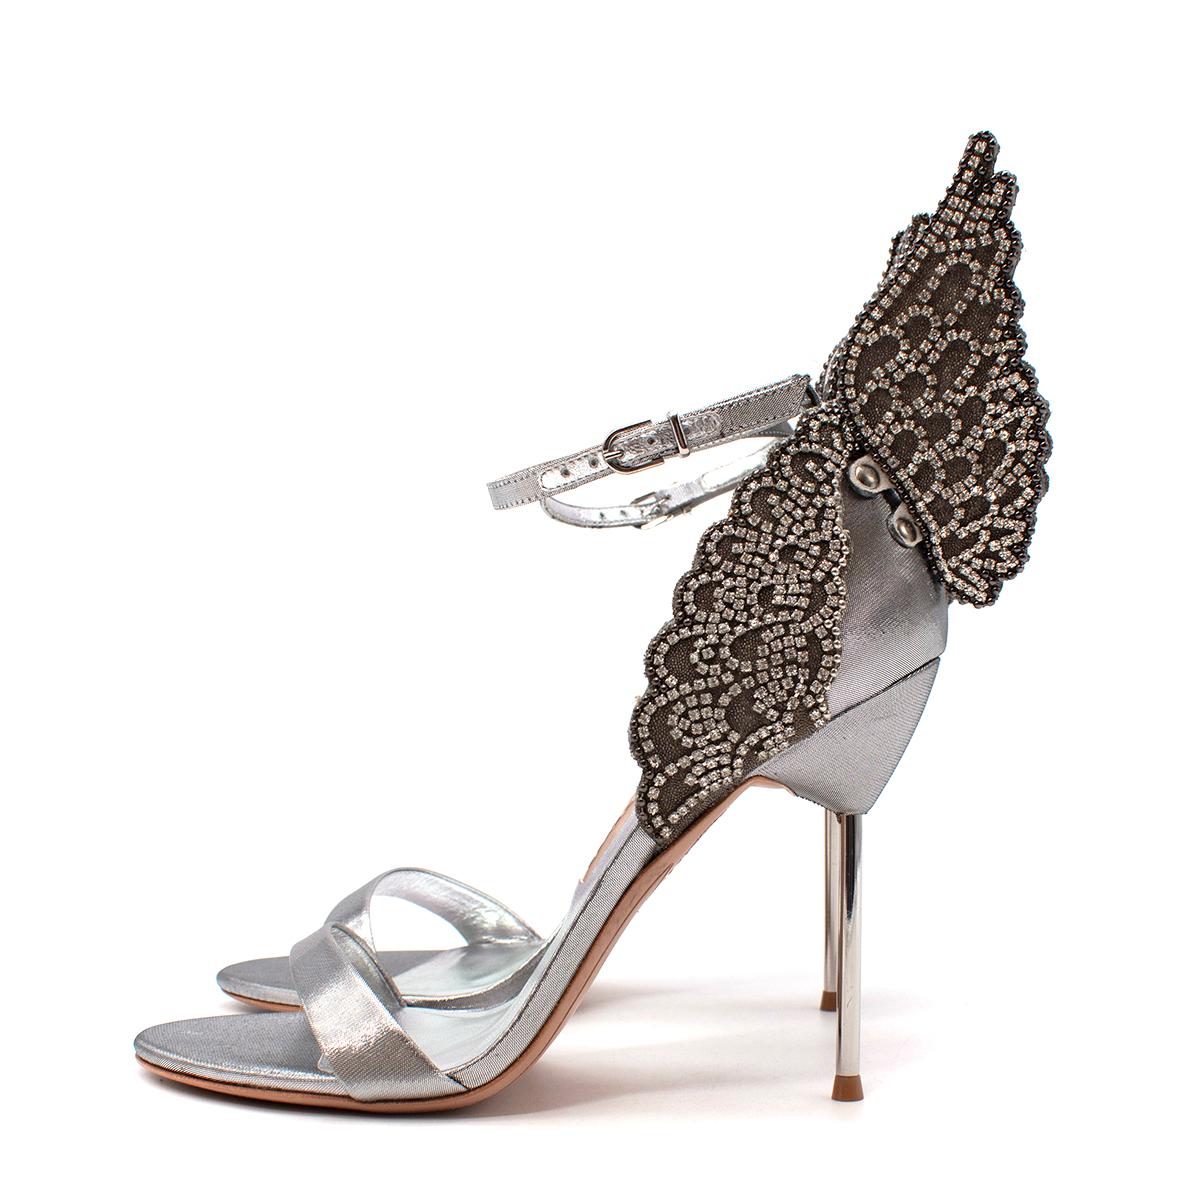 Women's Sophia Webster Silver Evangeline Butterfly 100 Sandals - US 8 For Sale